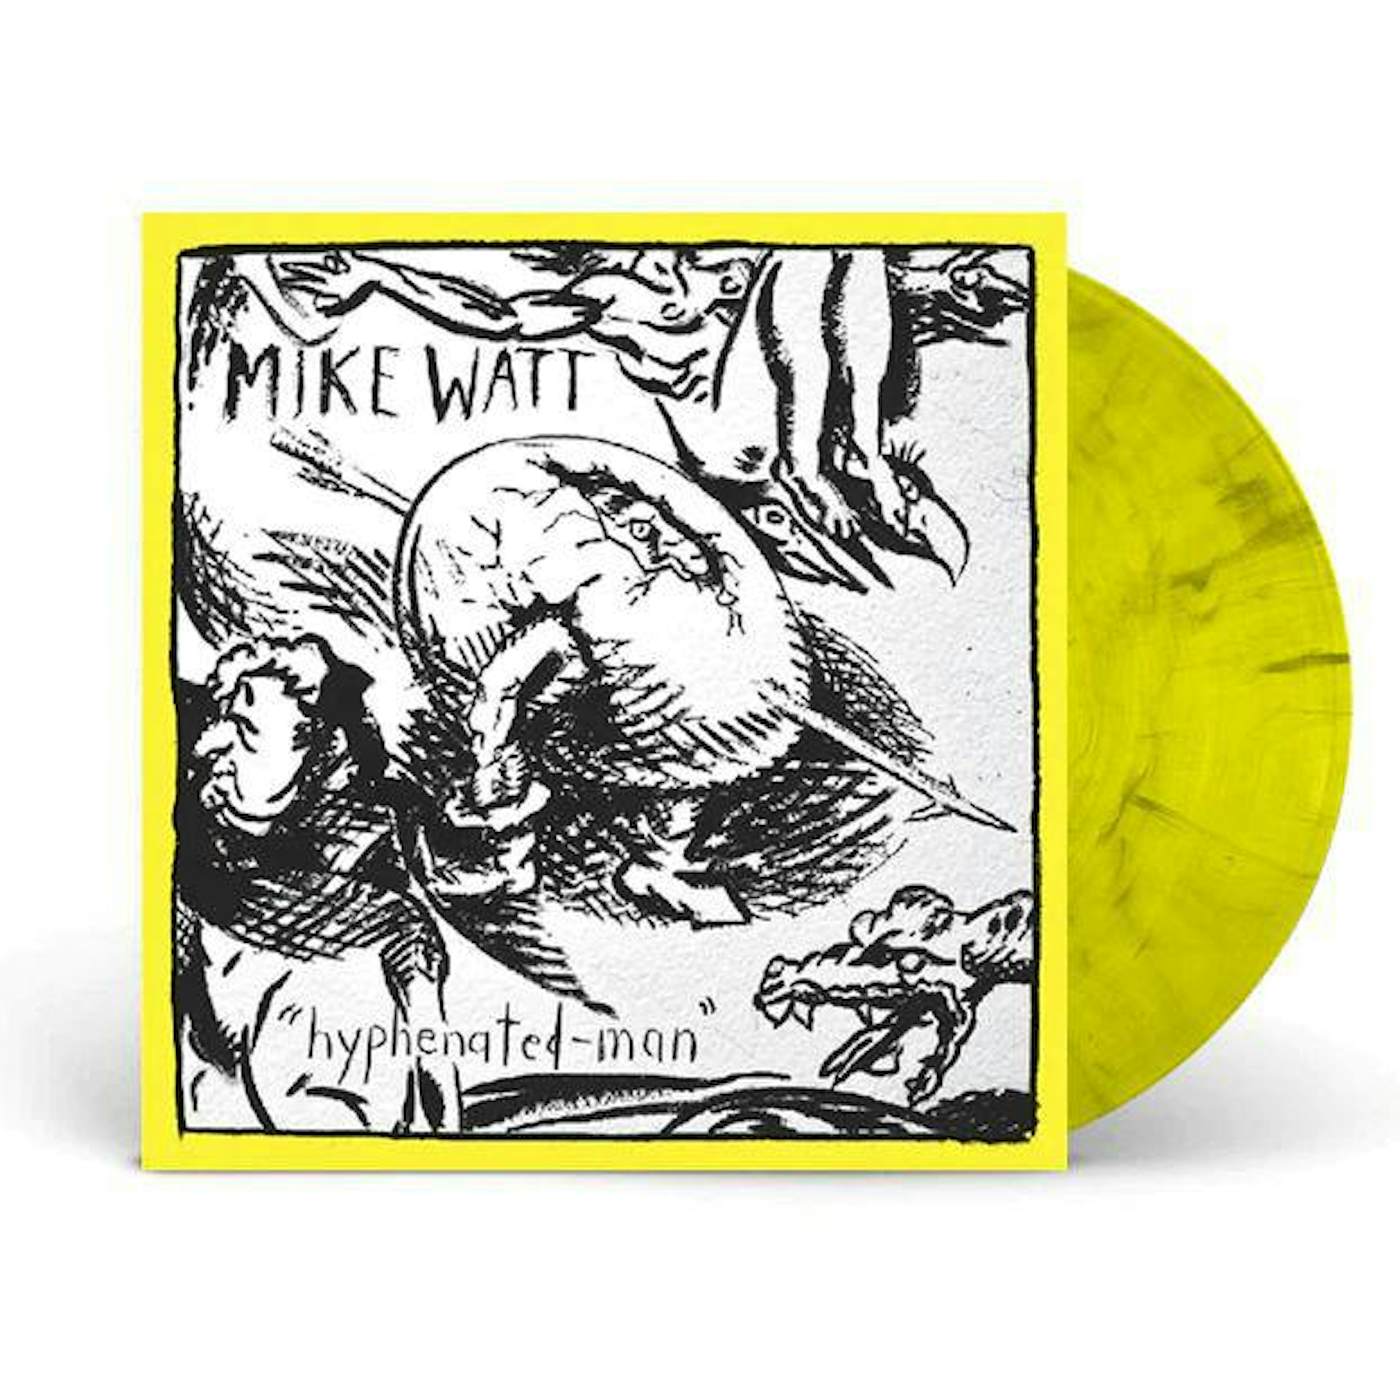 Mike Watt Hyphenated-man (Yellow Vinyl Record) 